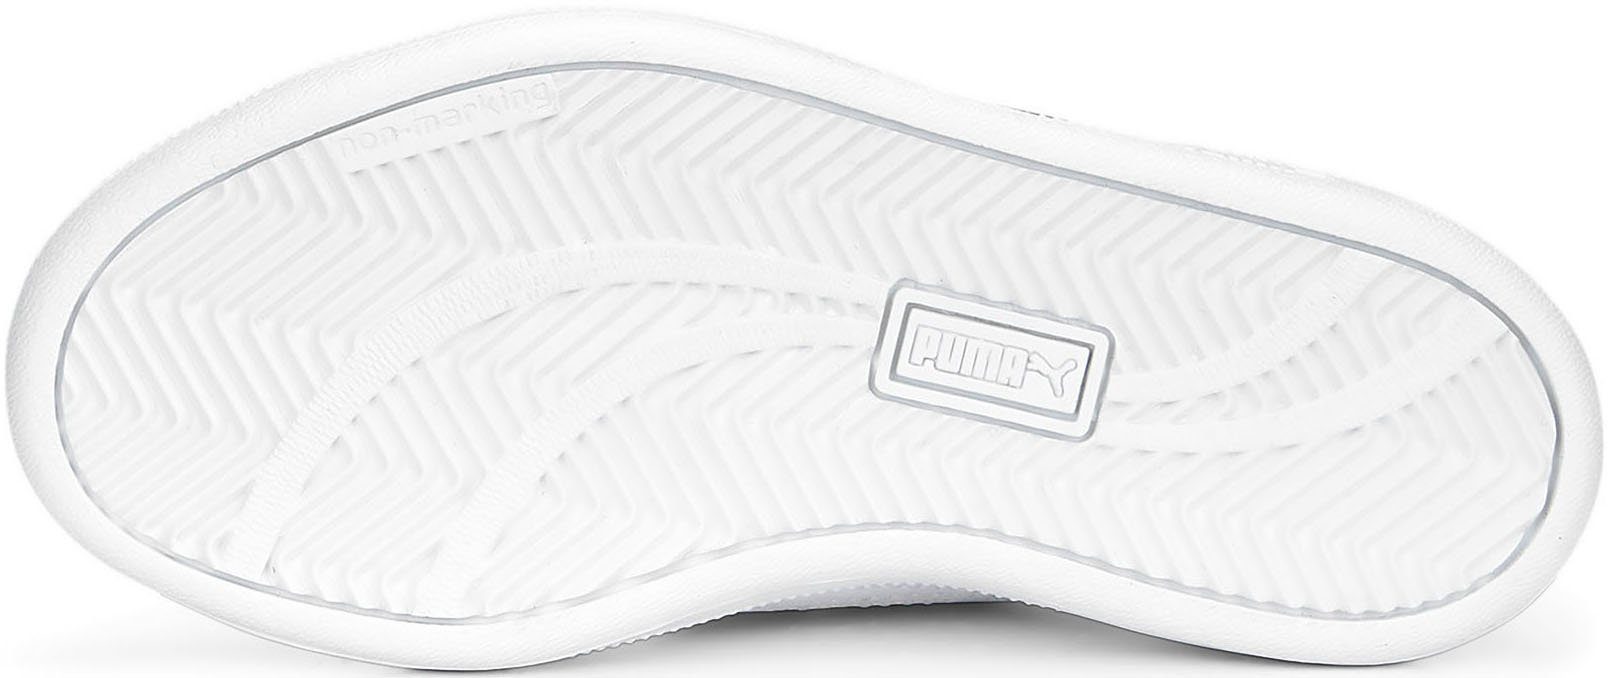 V PUMA weiß-navy UP PS PUMA Sneaker Klettverschluss mit